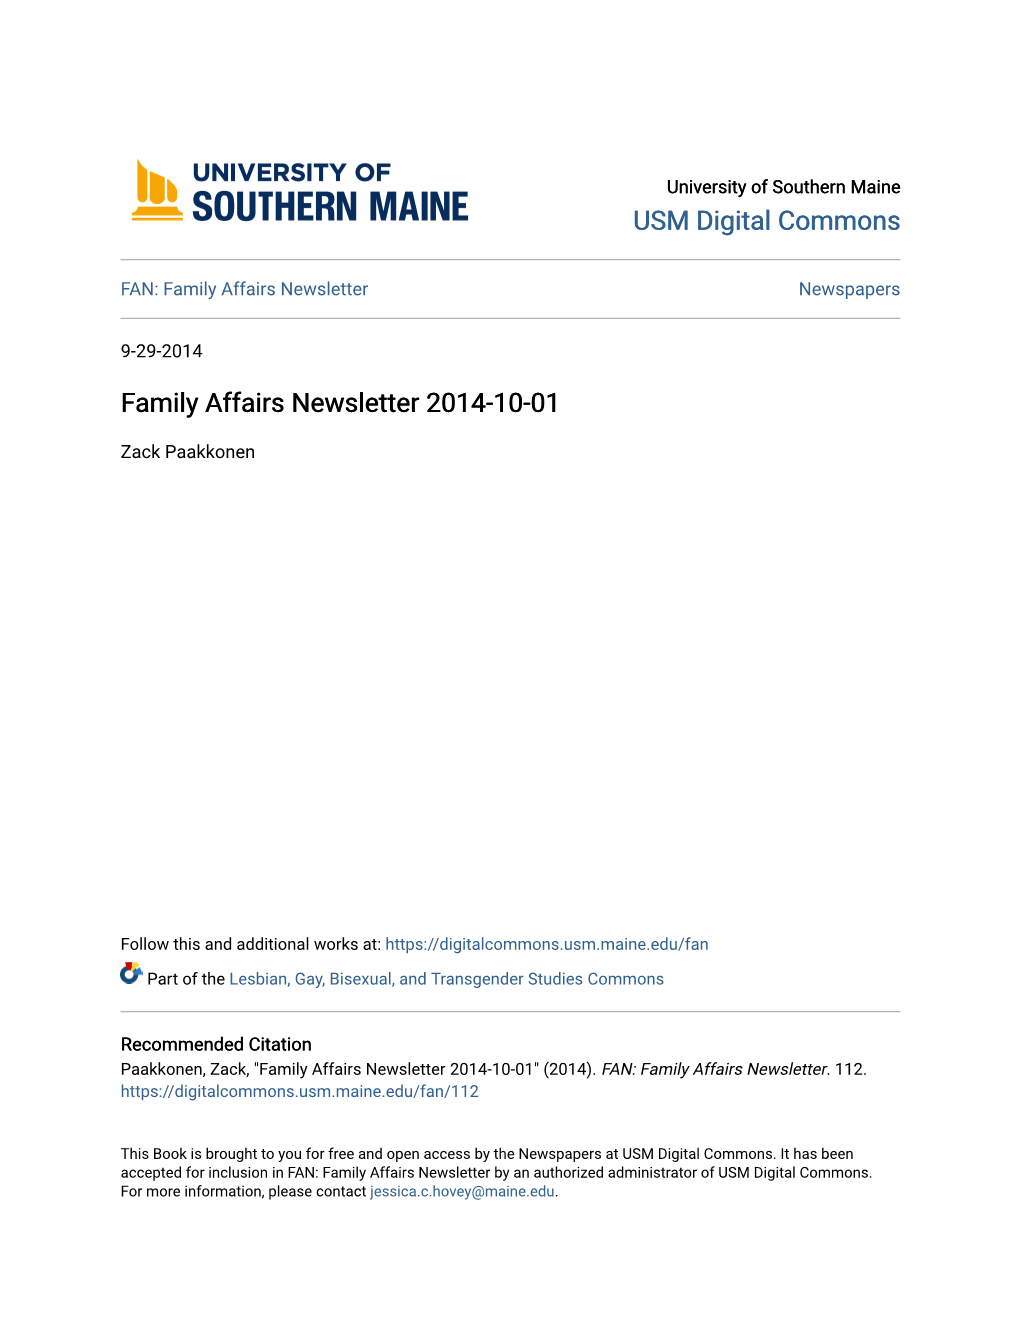 Family Affairs Newsletter 2014-10-01